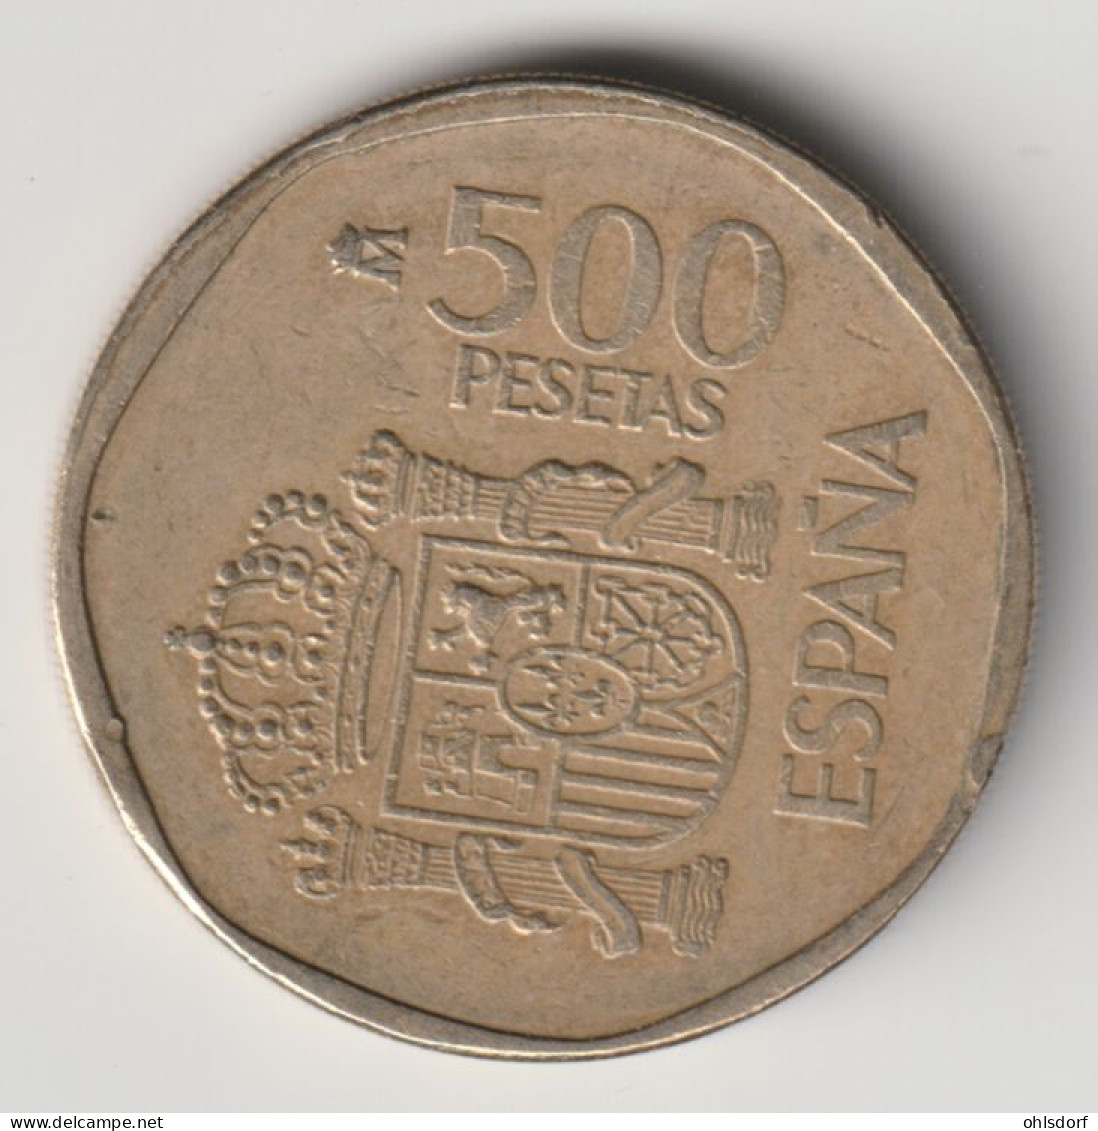 ESPANA 1988: 500 Pesetas, KM 831 - 500 Pesetas